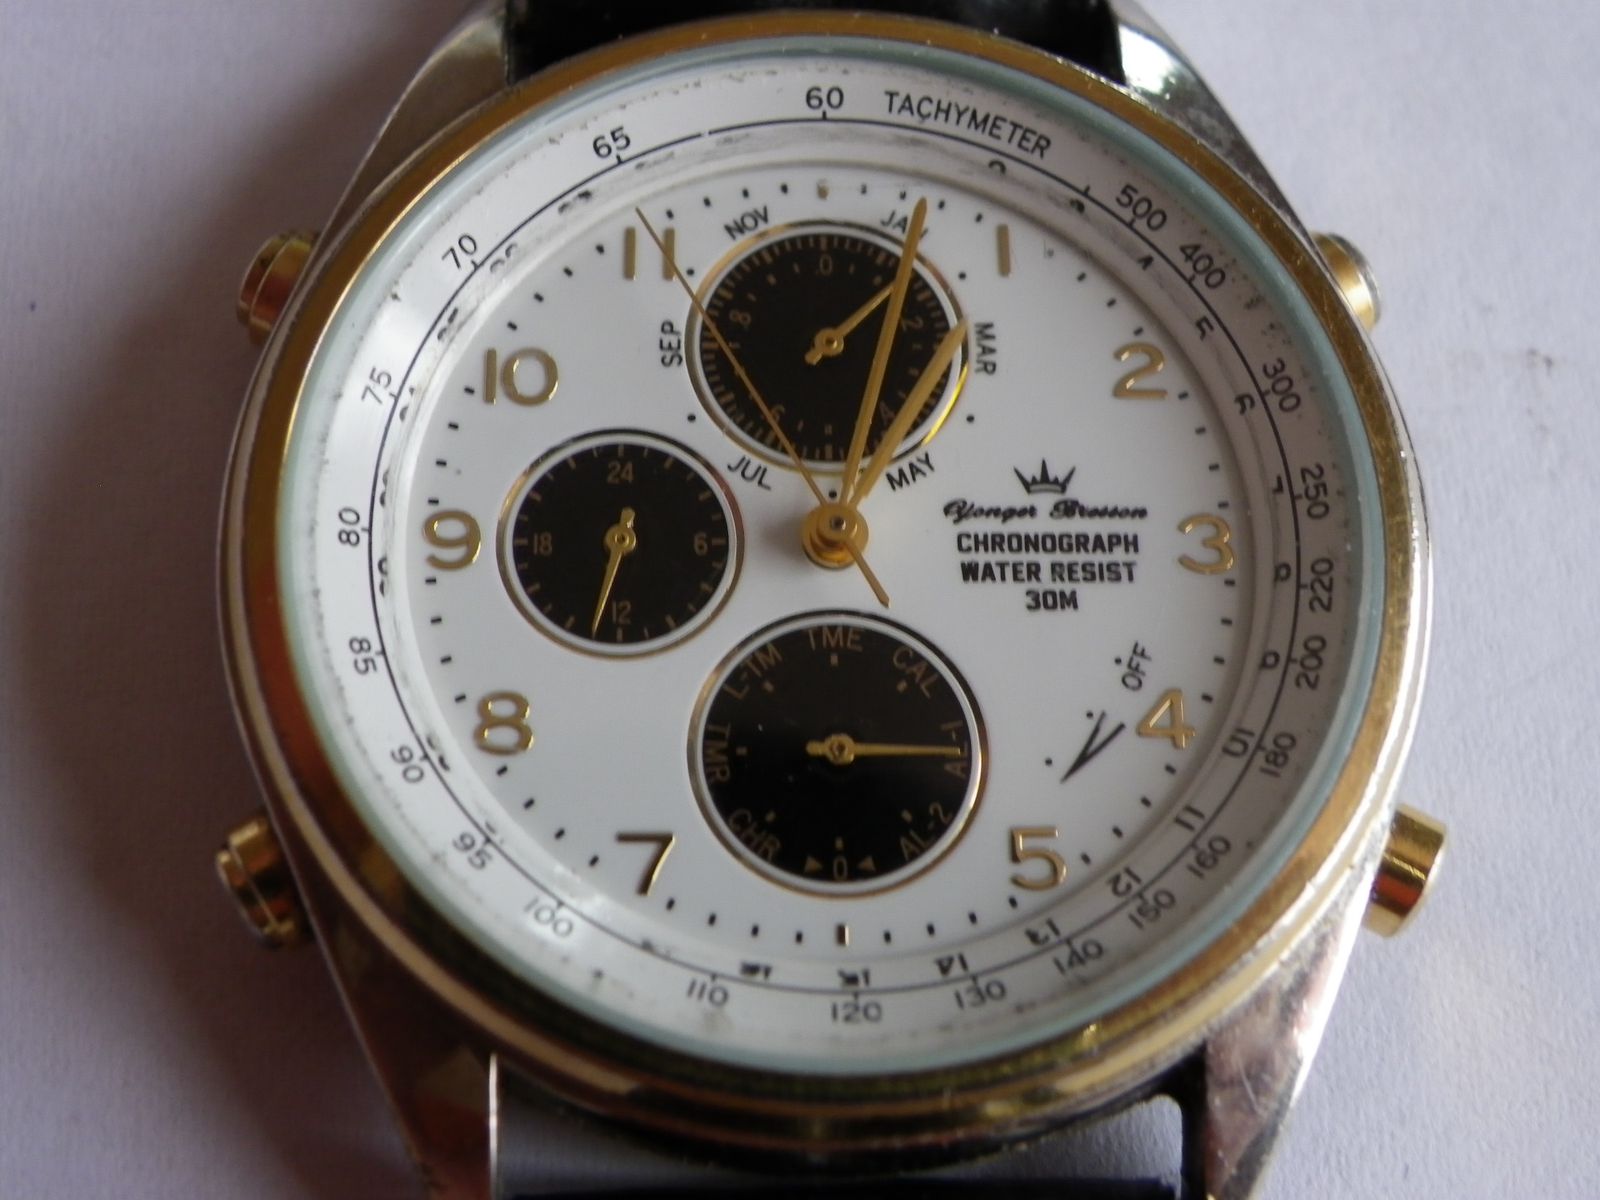 Ancienne Montre Yonger et Bresson chronographe tachymètre - imagesphotoss